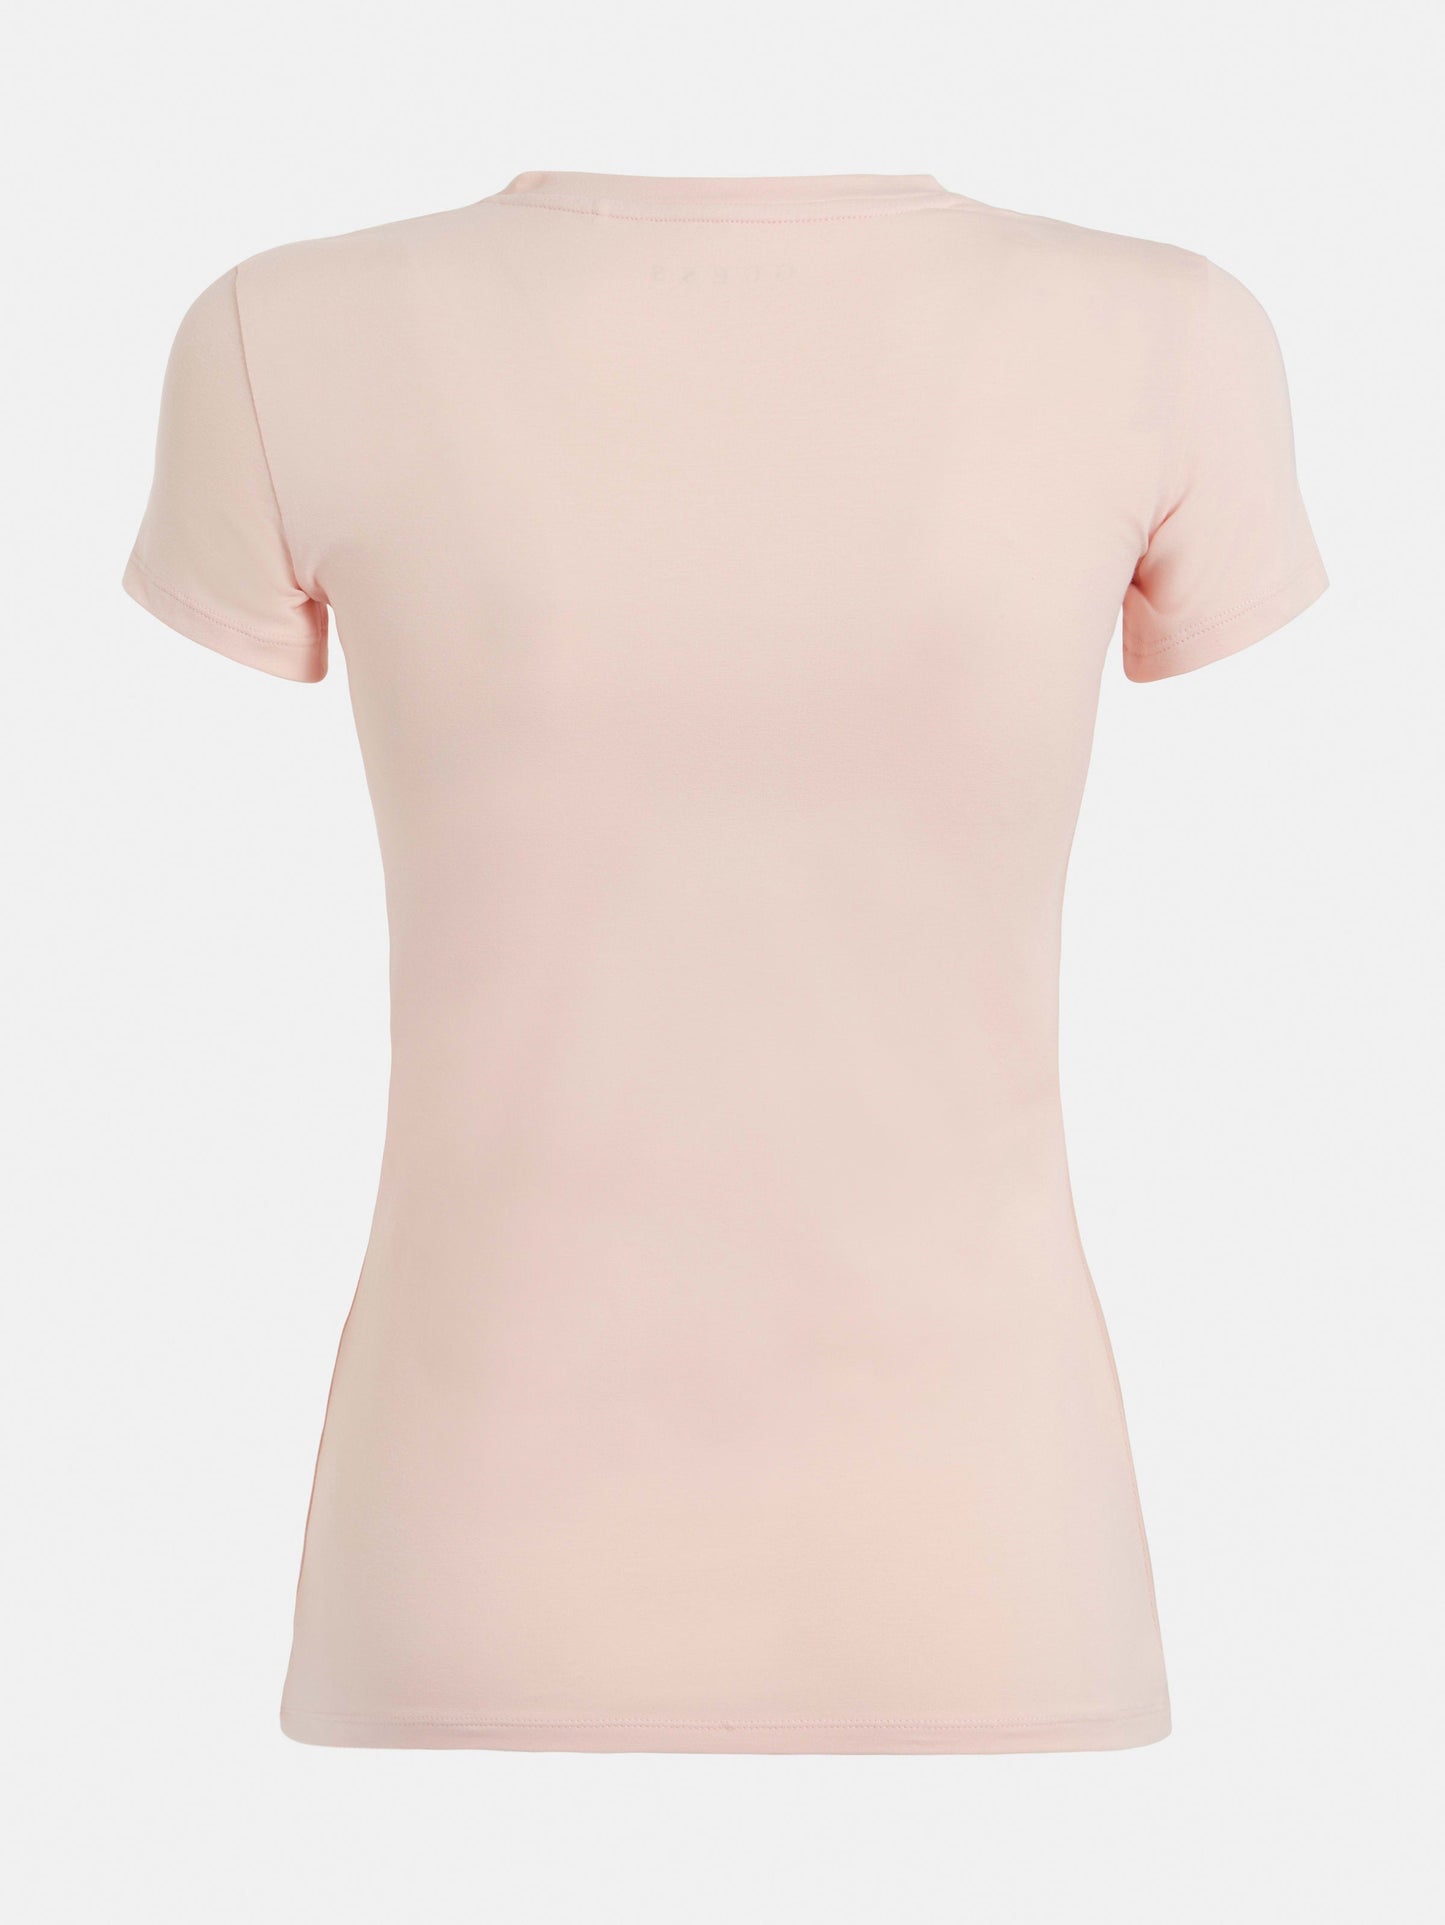 GUESS Womens Peach Trine Logo T-Shirt Ghost Back View